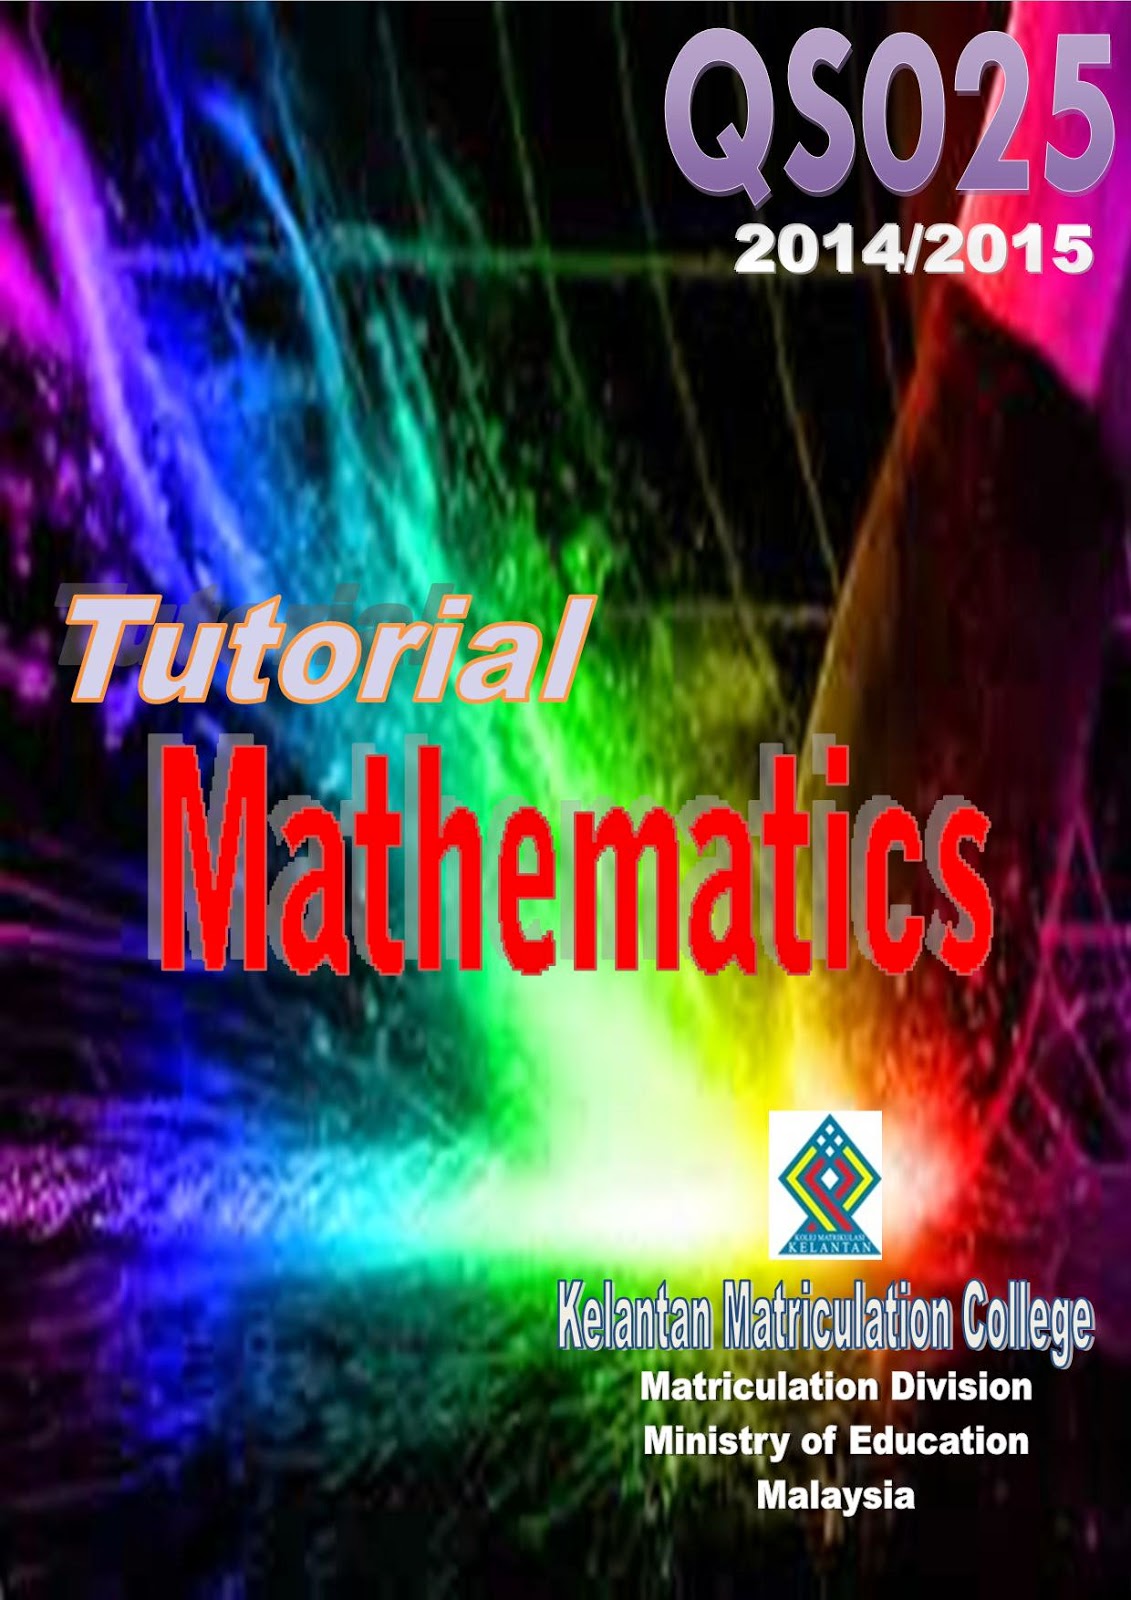 TEMANSTUDY: Contoh Rekaan Kulit Buku Tutorial Matematik 